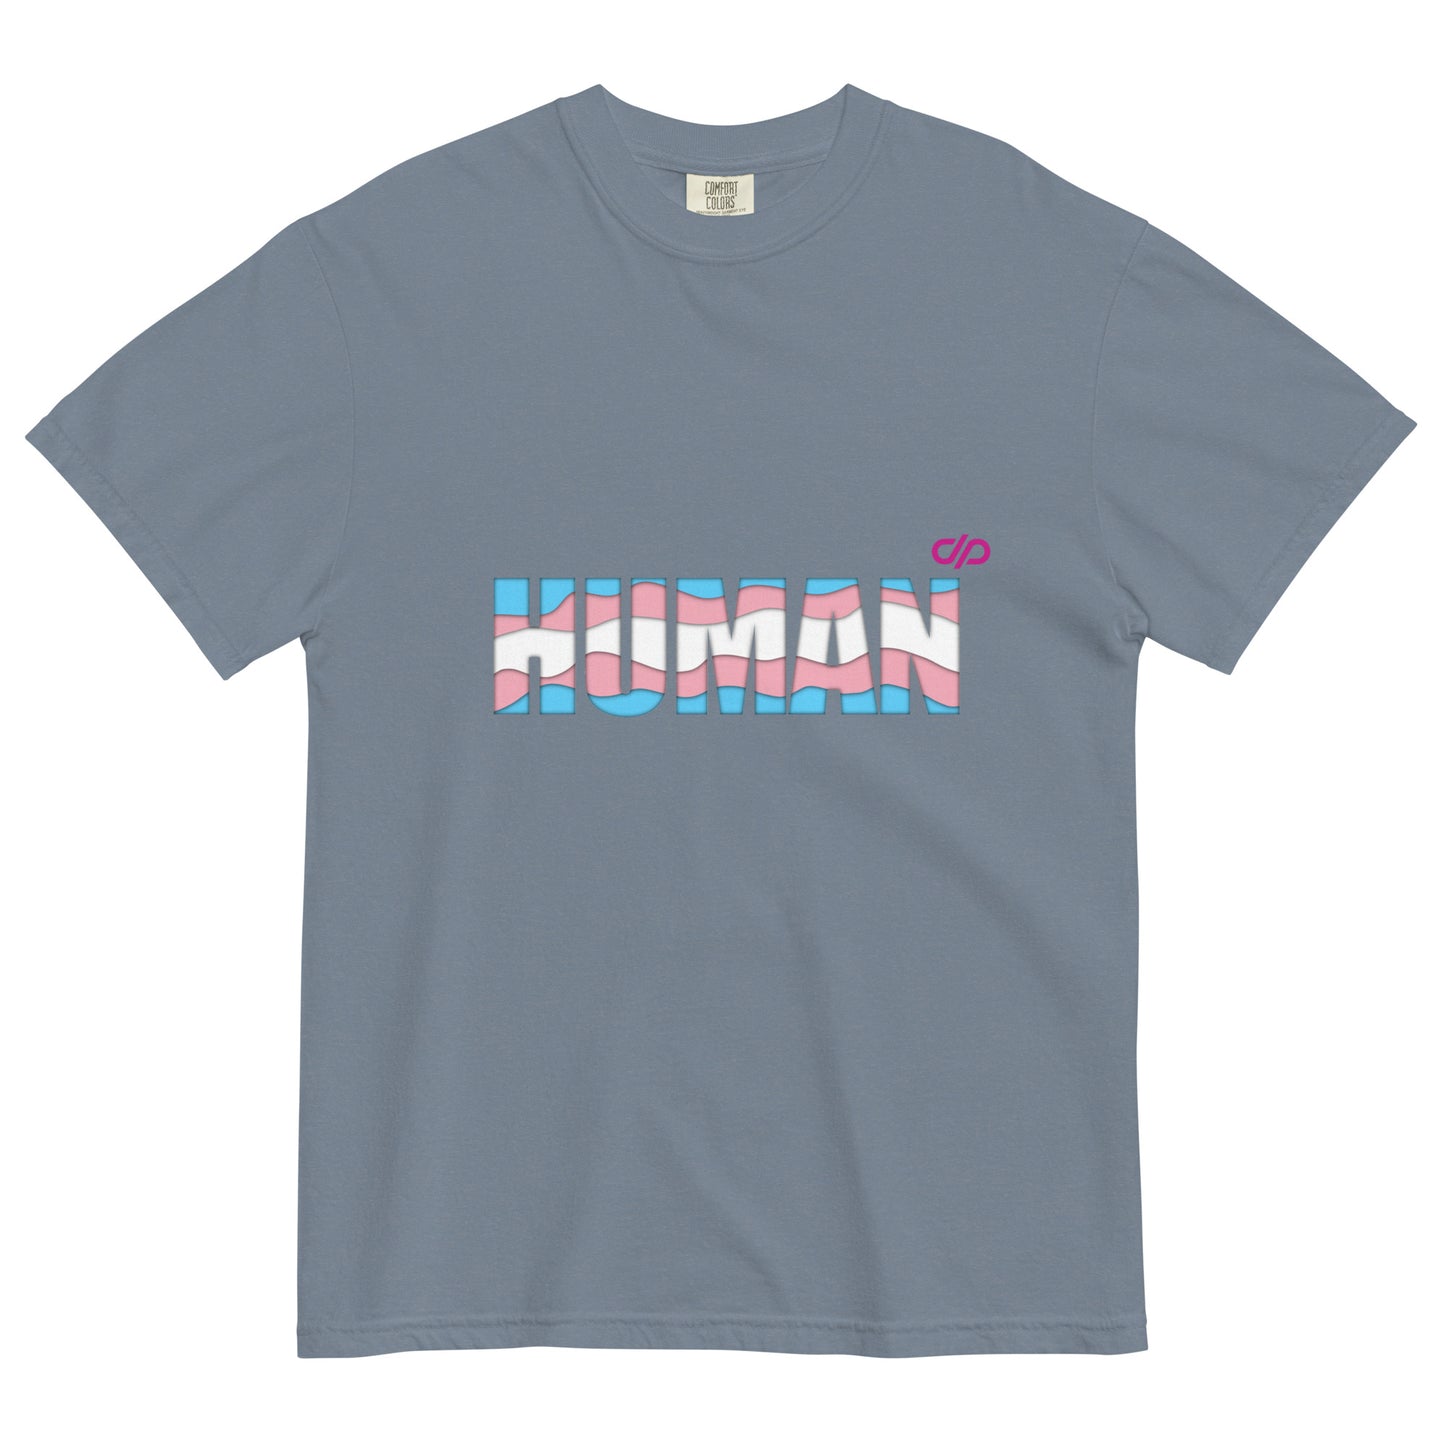 Trans HUMAN tshirt